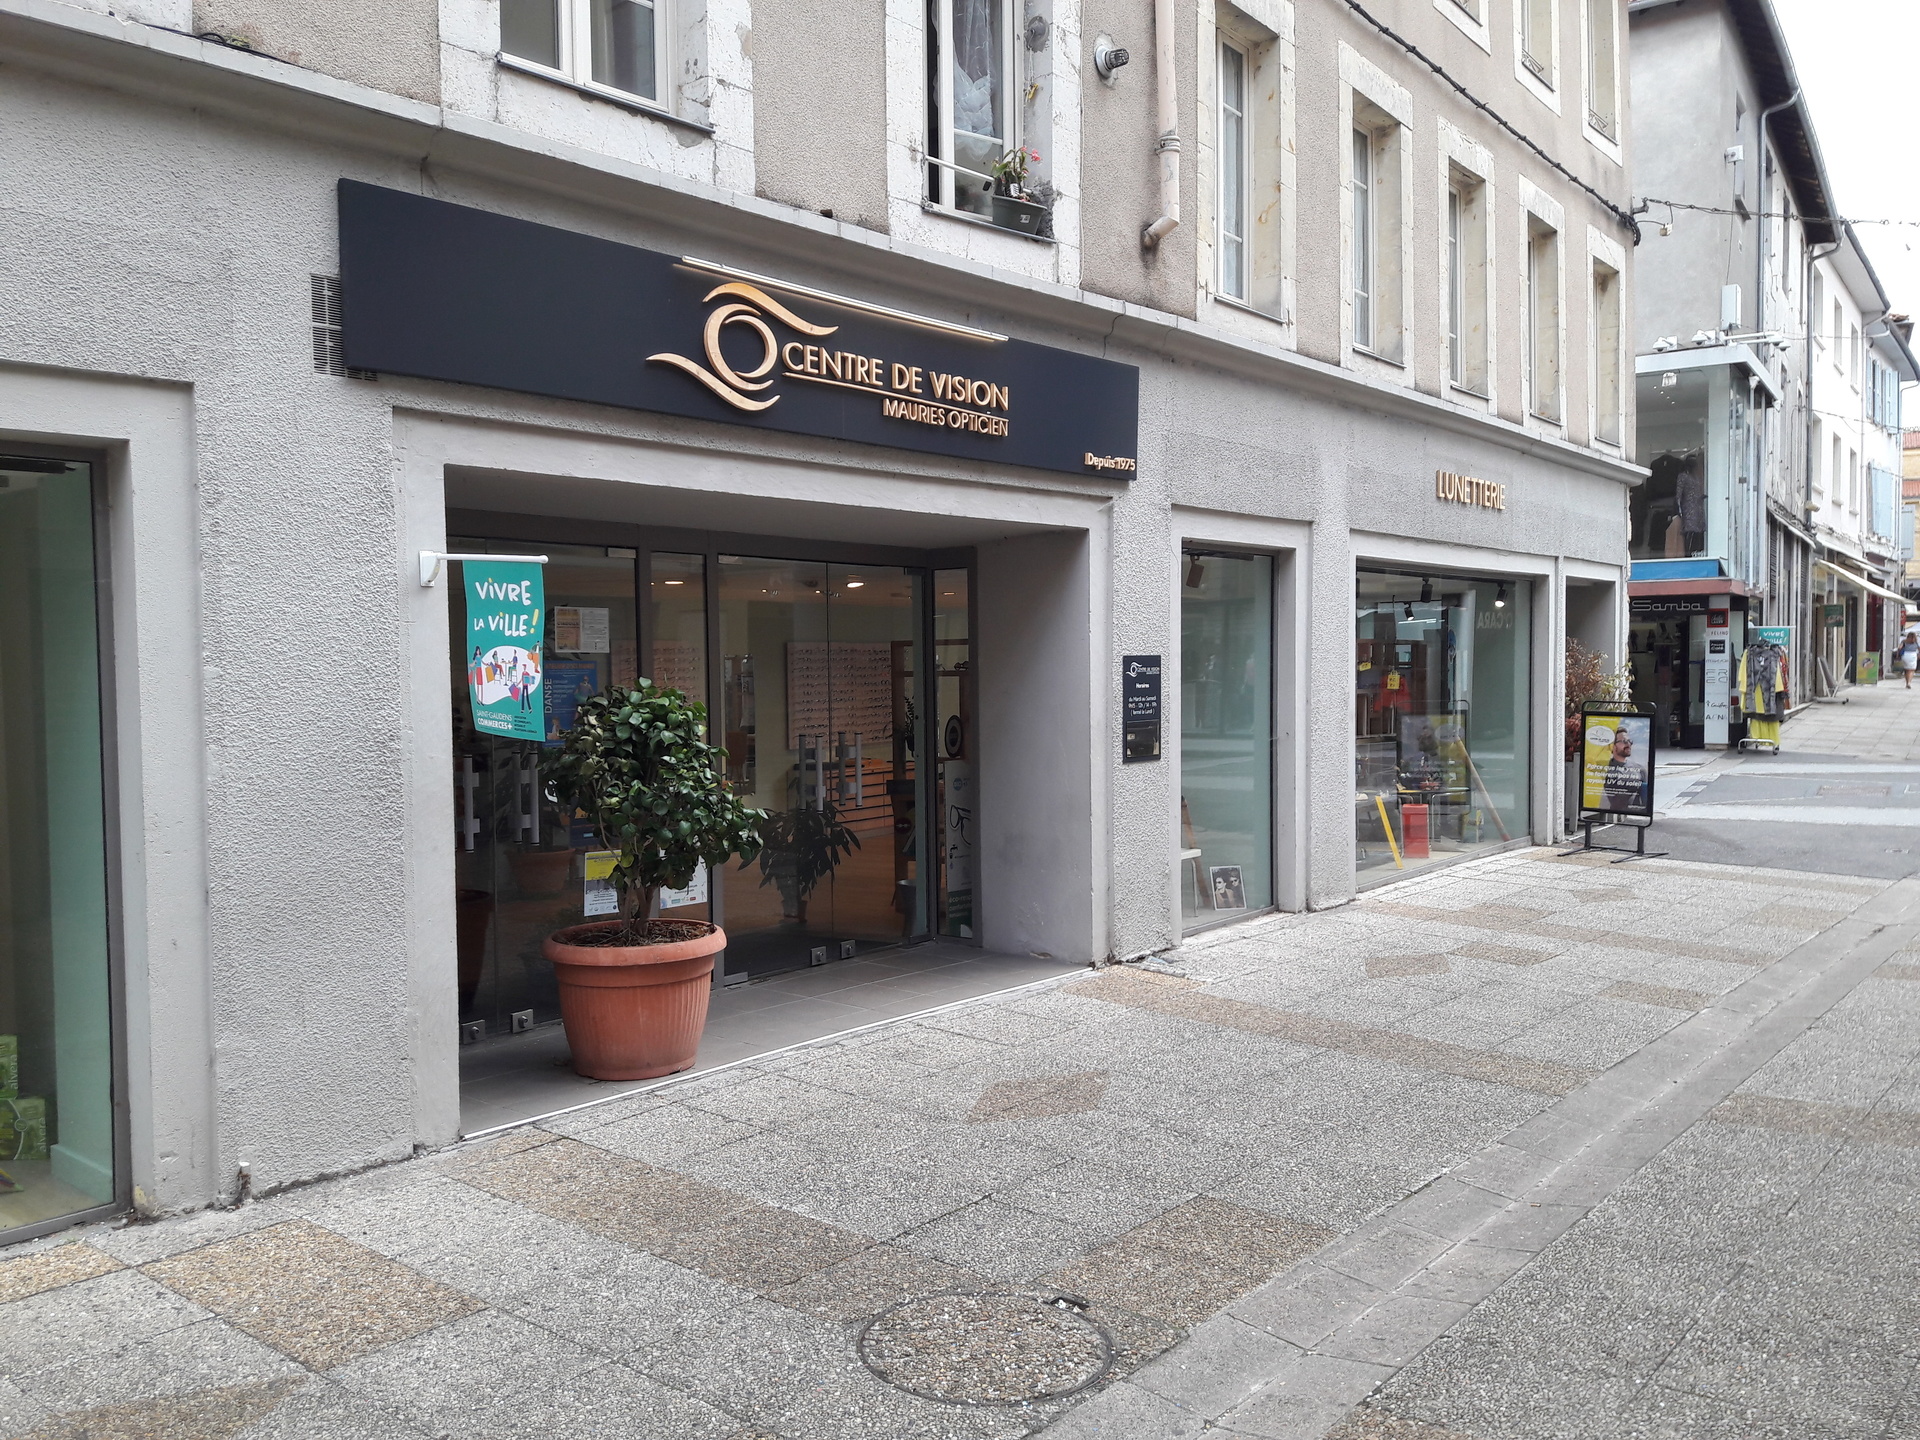 Boutique Centre de vision Mauries Opticien - J'achte en Comminges